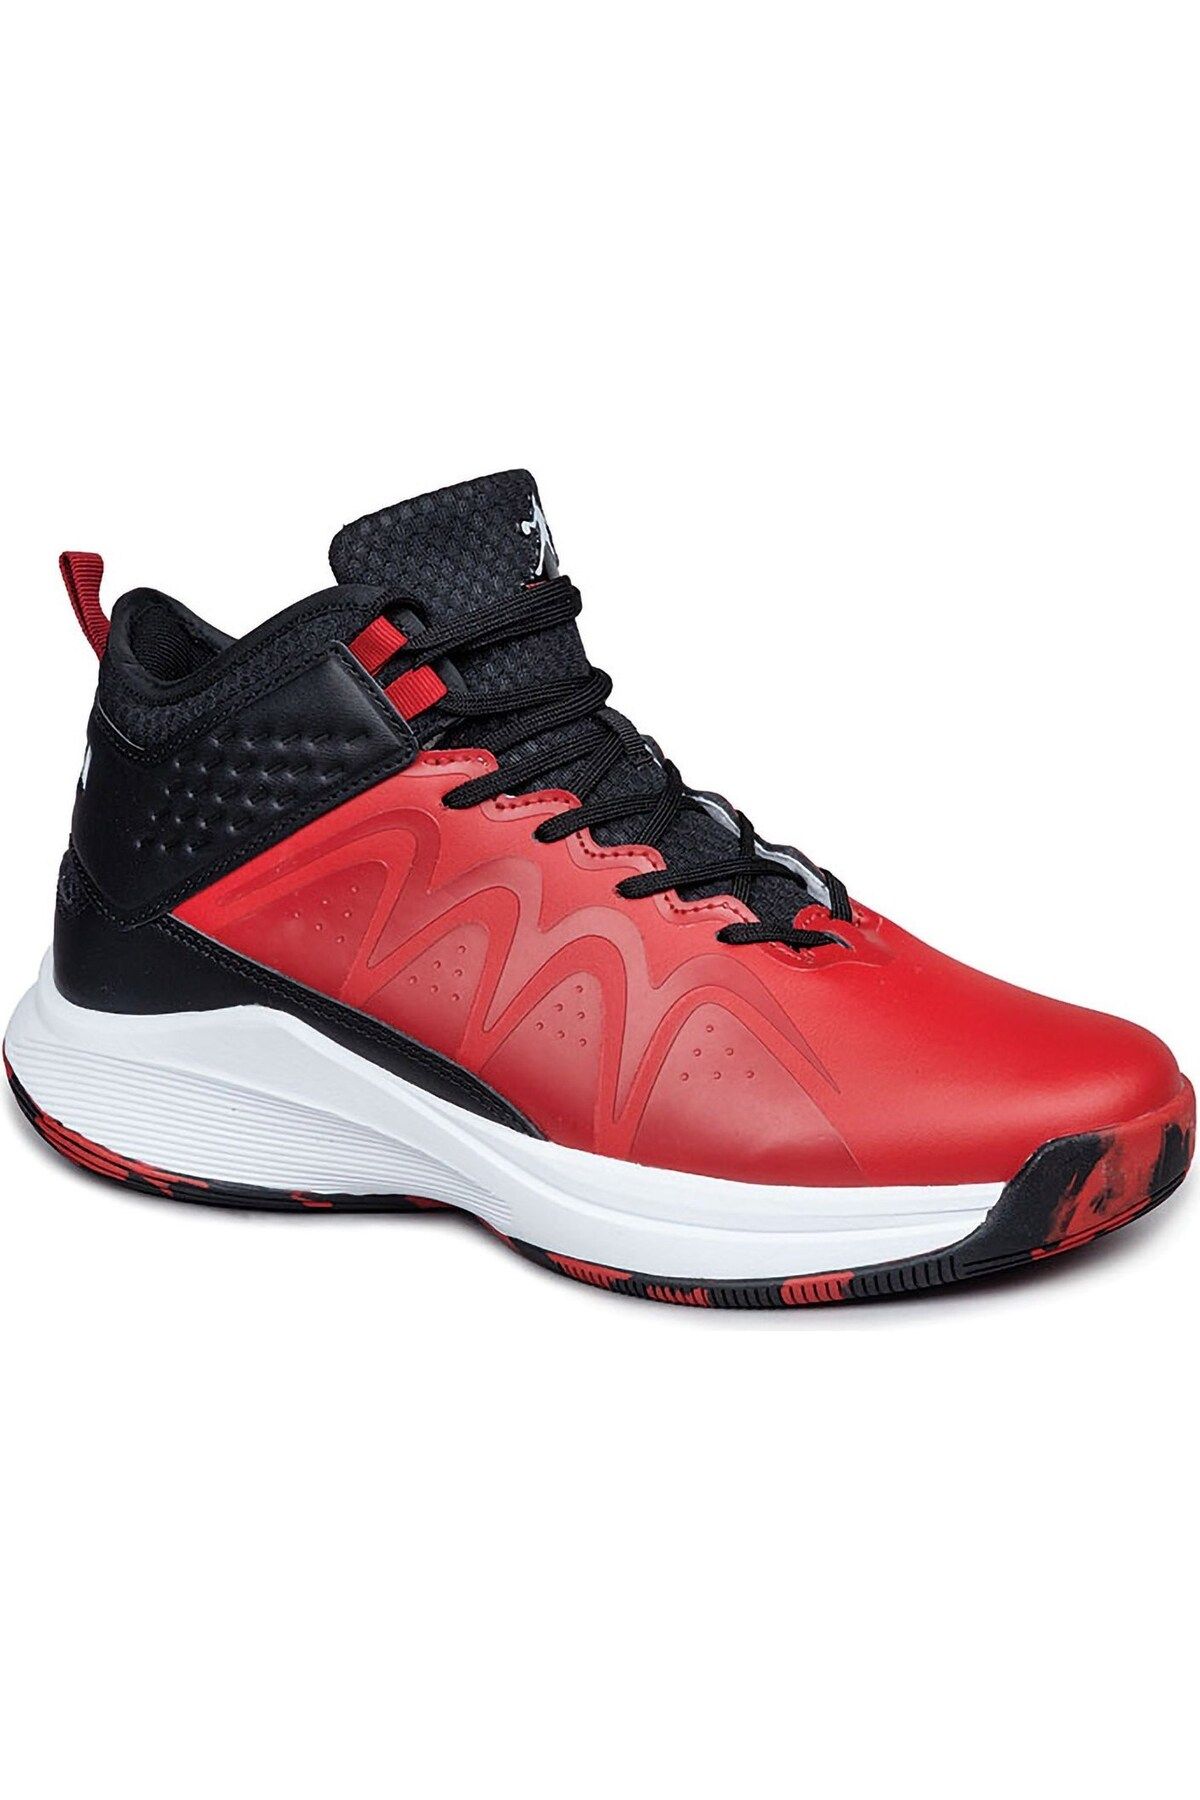 Jump Erkek Kırmızı - Siyah 28652 Erkek Basketbol Ayakkabı Ja128652121bt